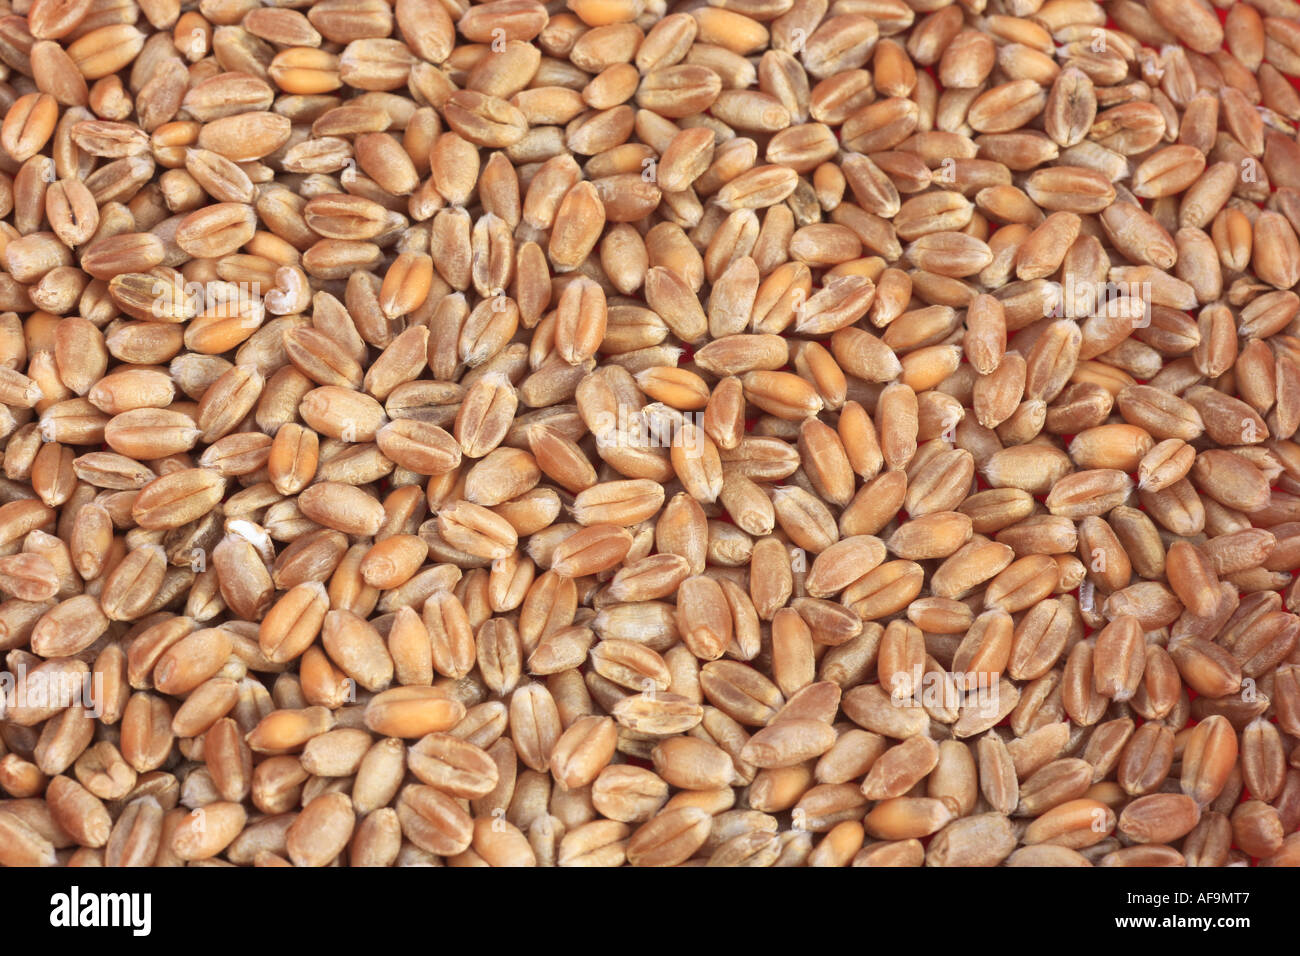 bread wheat, cultivated wheat (Triticum aestivum), grains Stock Photo